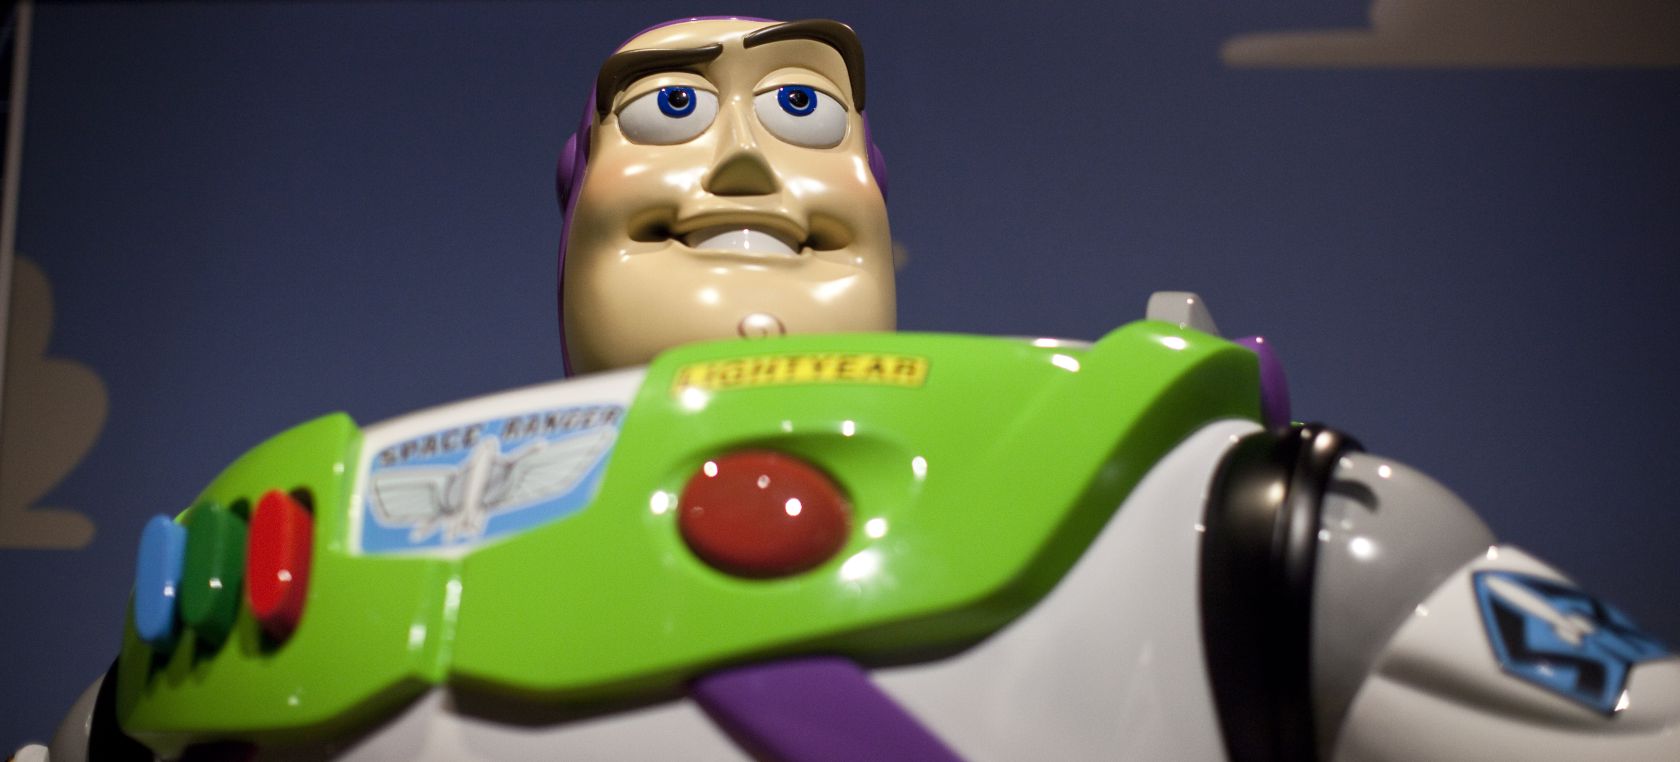 Lightyear: Primer de 'Lightyear', la película sobre Buzz Lightyear de Pixar Disney | Cine y Televisión | LOS40